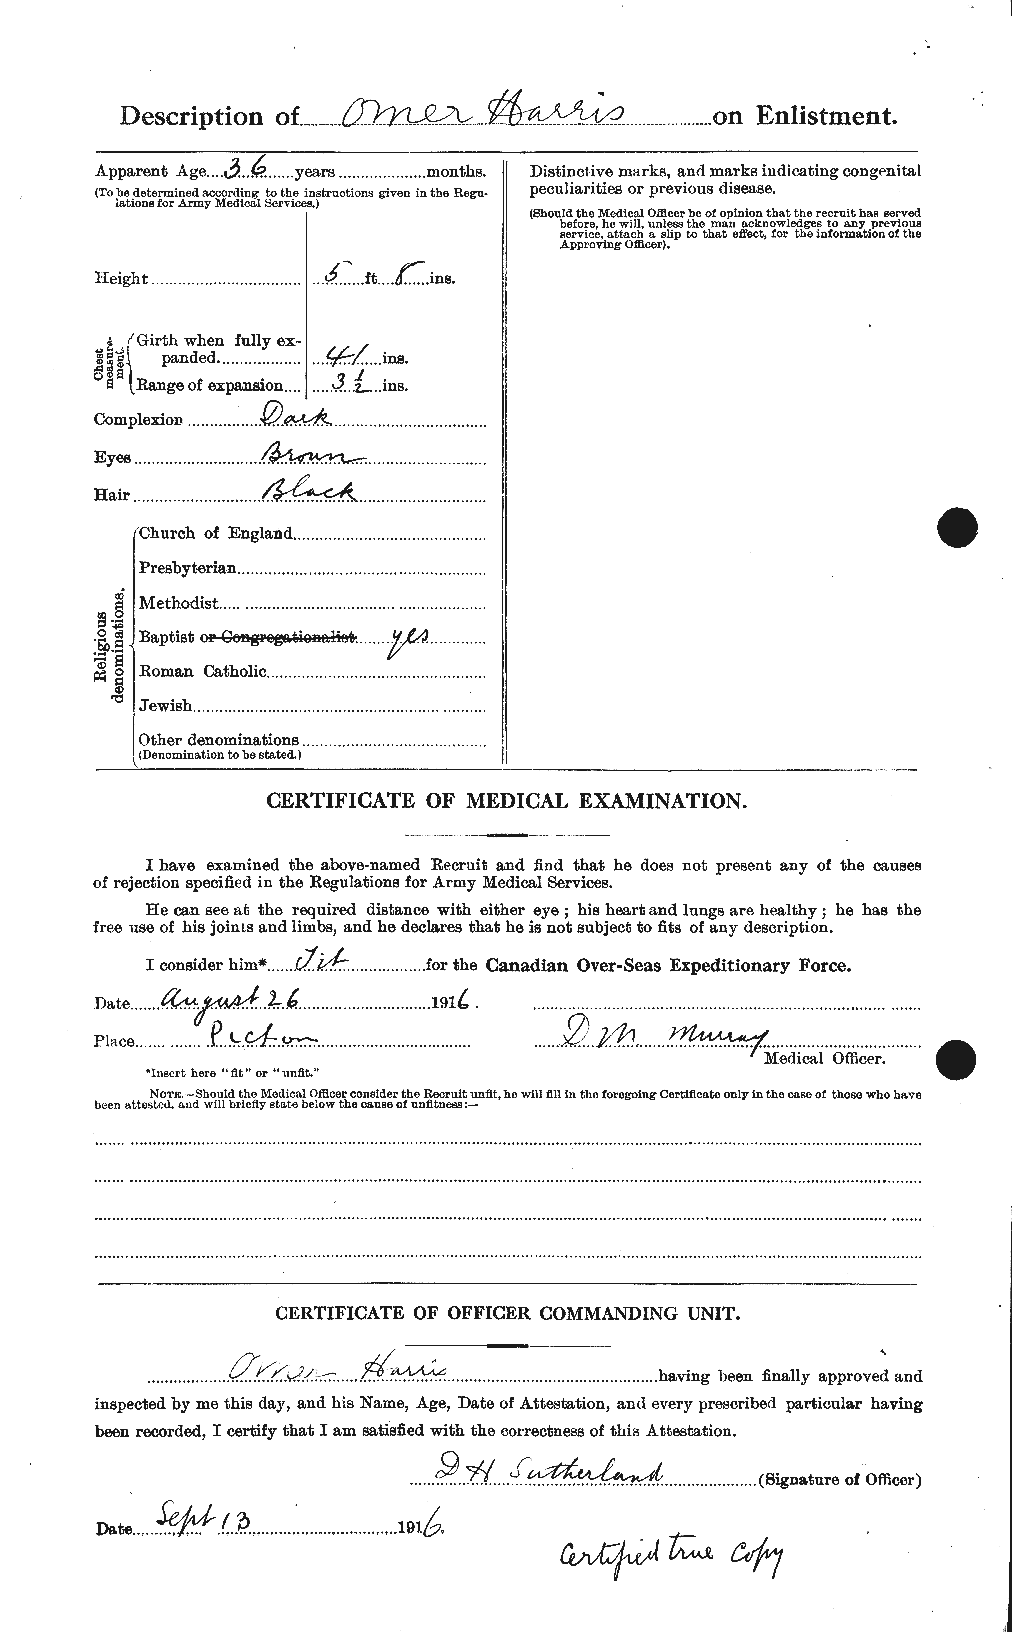 Dossiers du Personnel de la Première Guerre mondiale - CEC 378086b